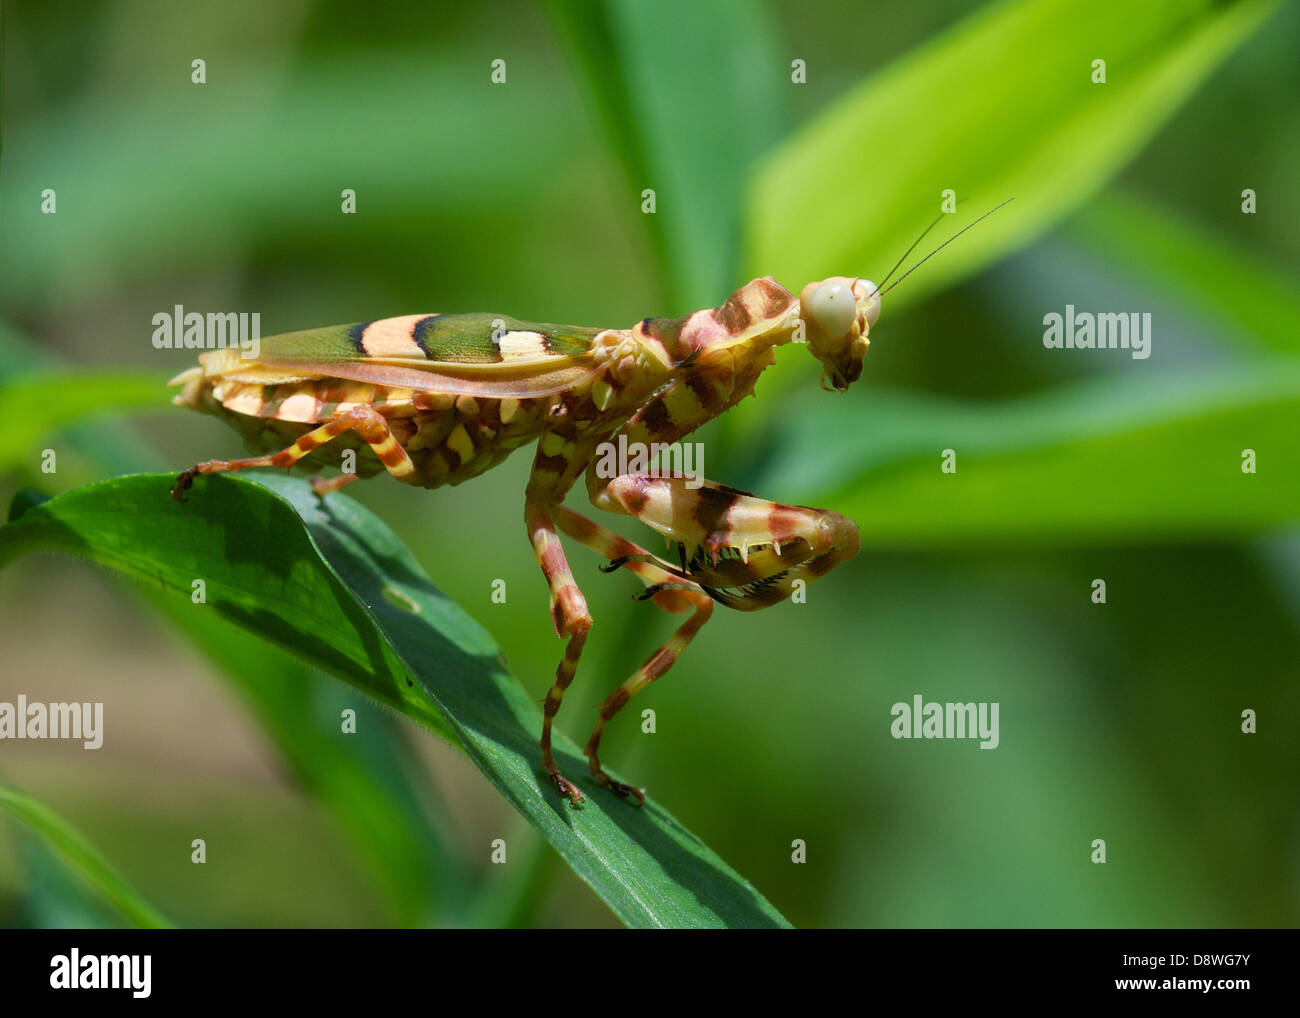 Creobroter elongata, flower mantis. Kaeng Krachan National Park, Thailand. Stock Photo